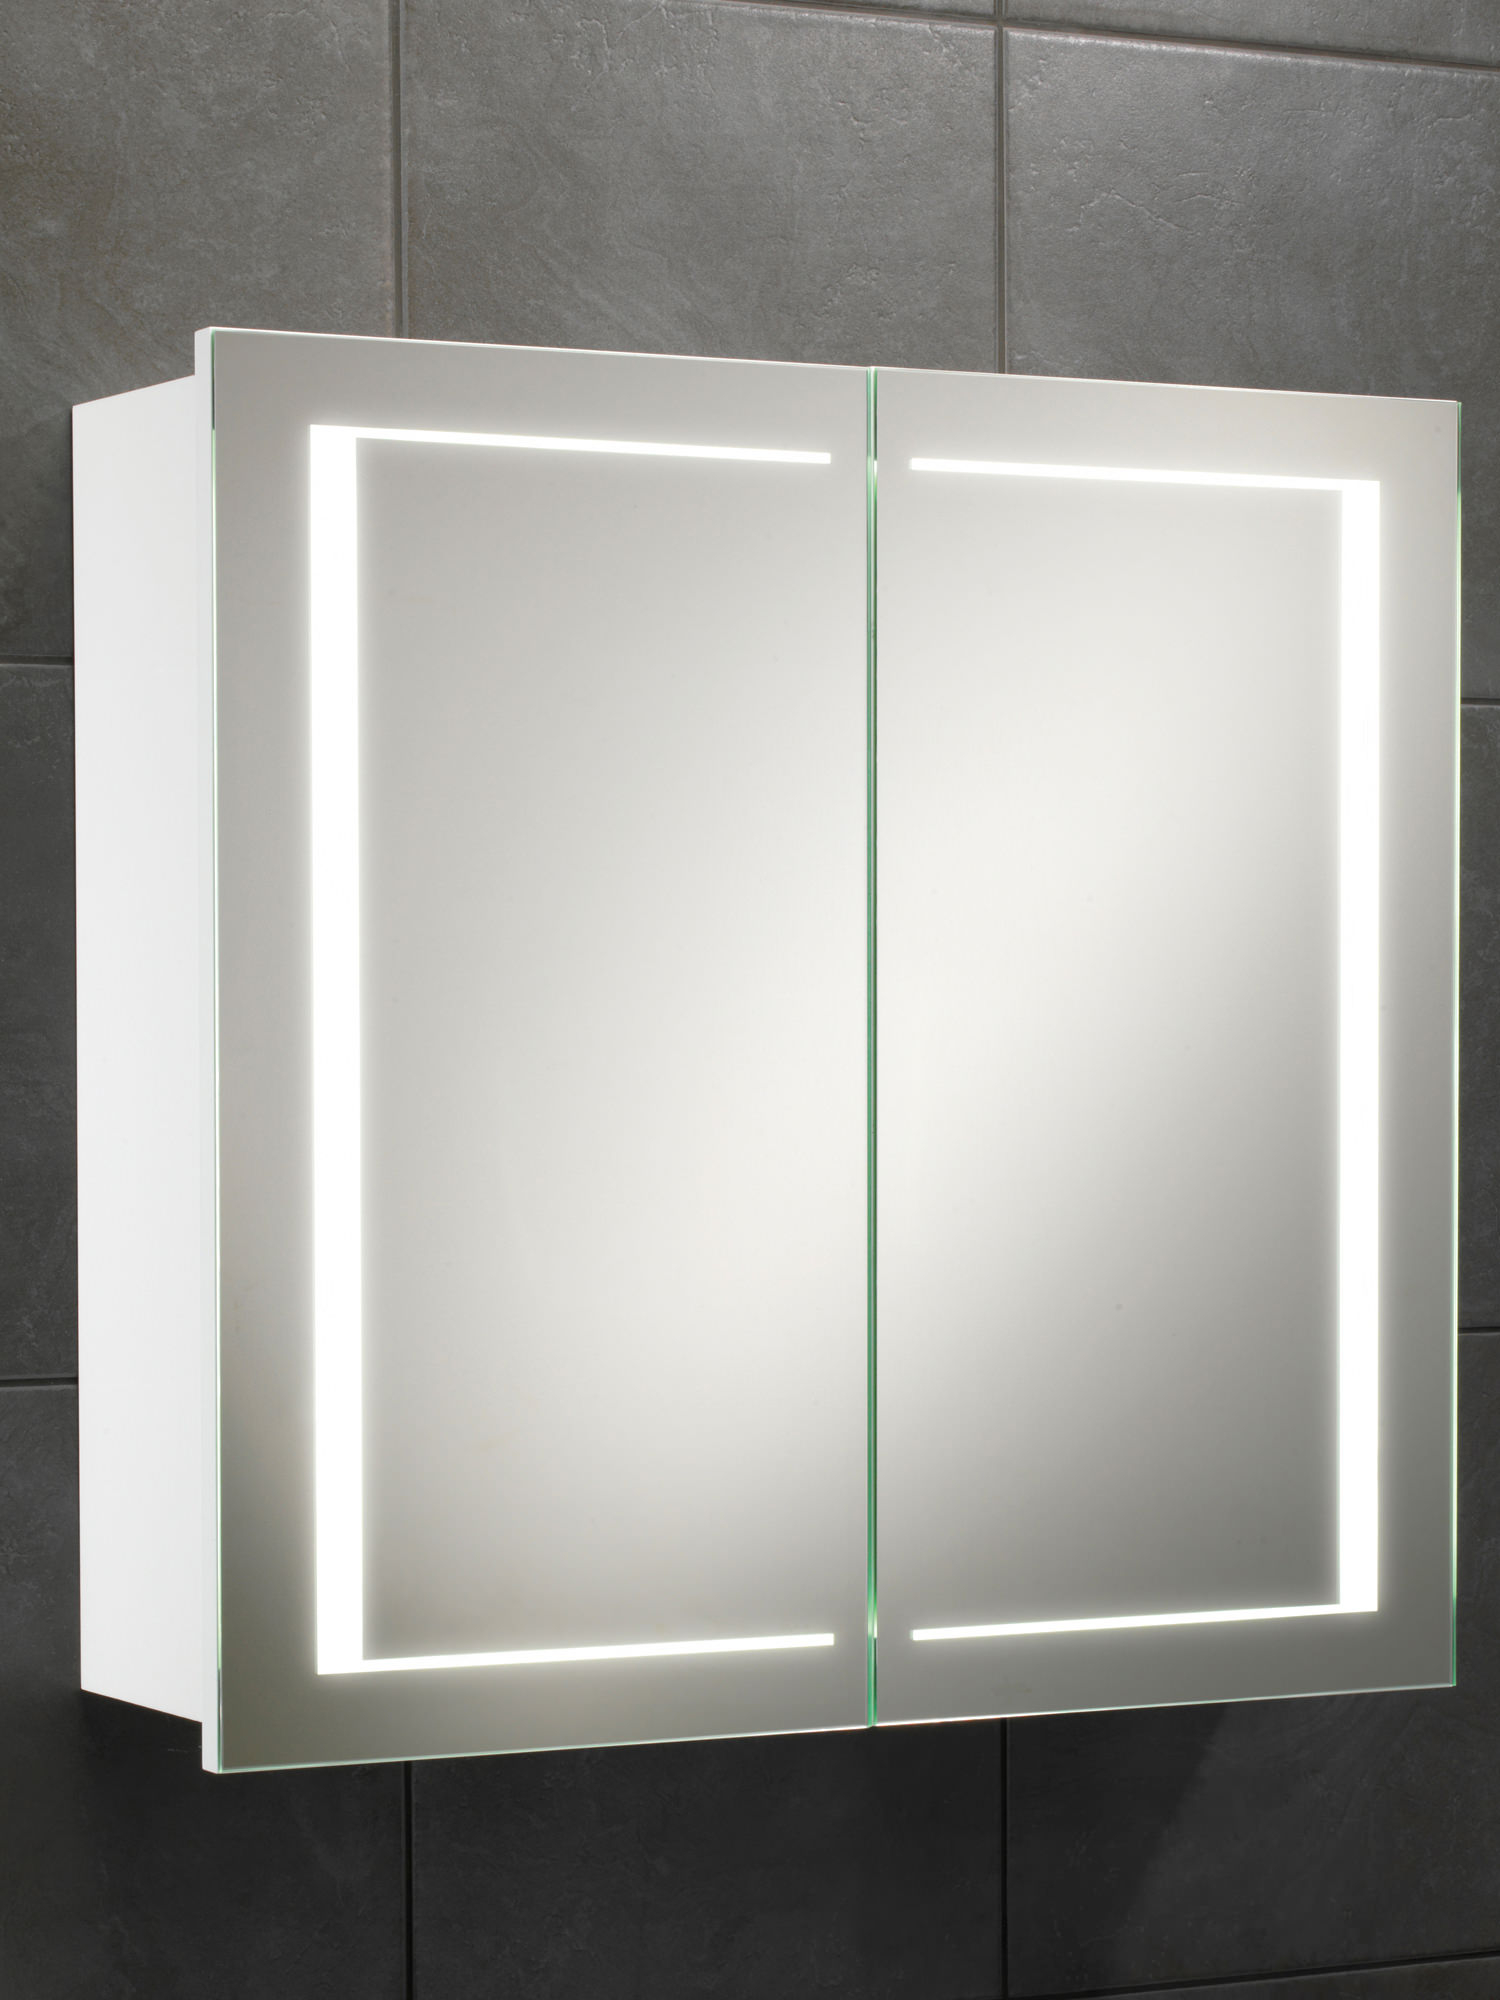 Hib Colorado Double Door Led Illuminated Cabinet 600 X 630mm within sizing 1500 X 2000